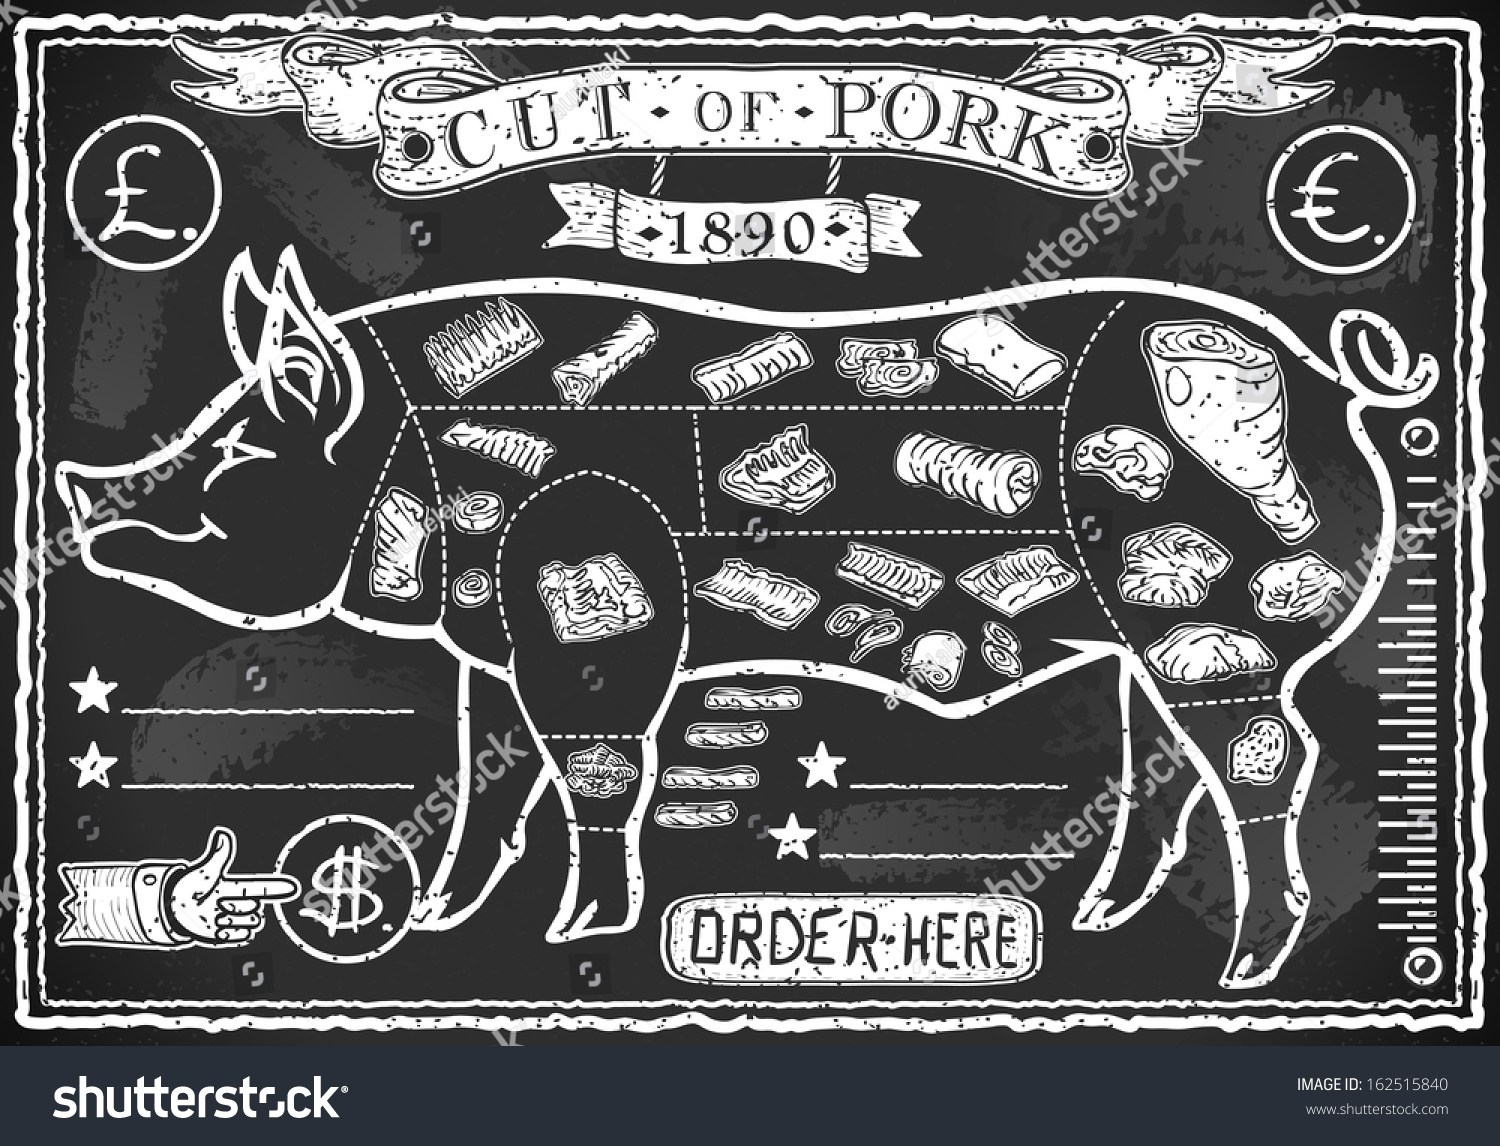 Vintage Pig Butcher Chart